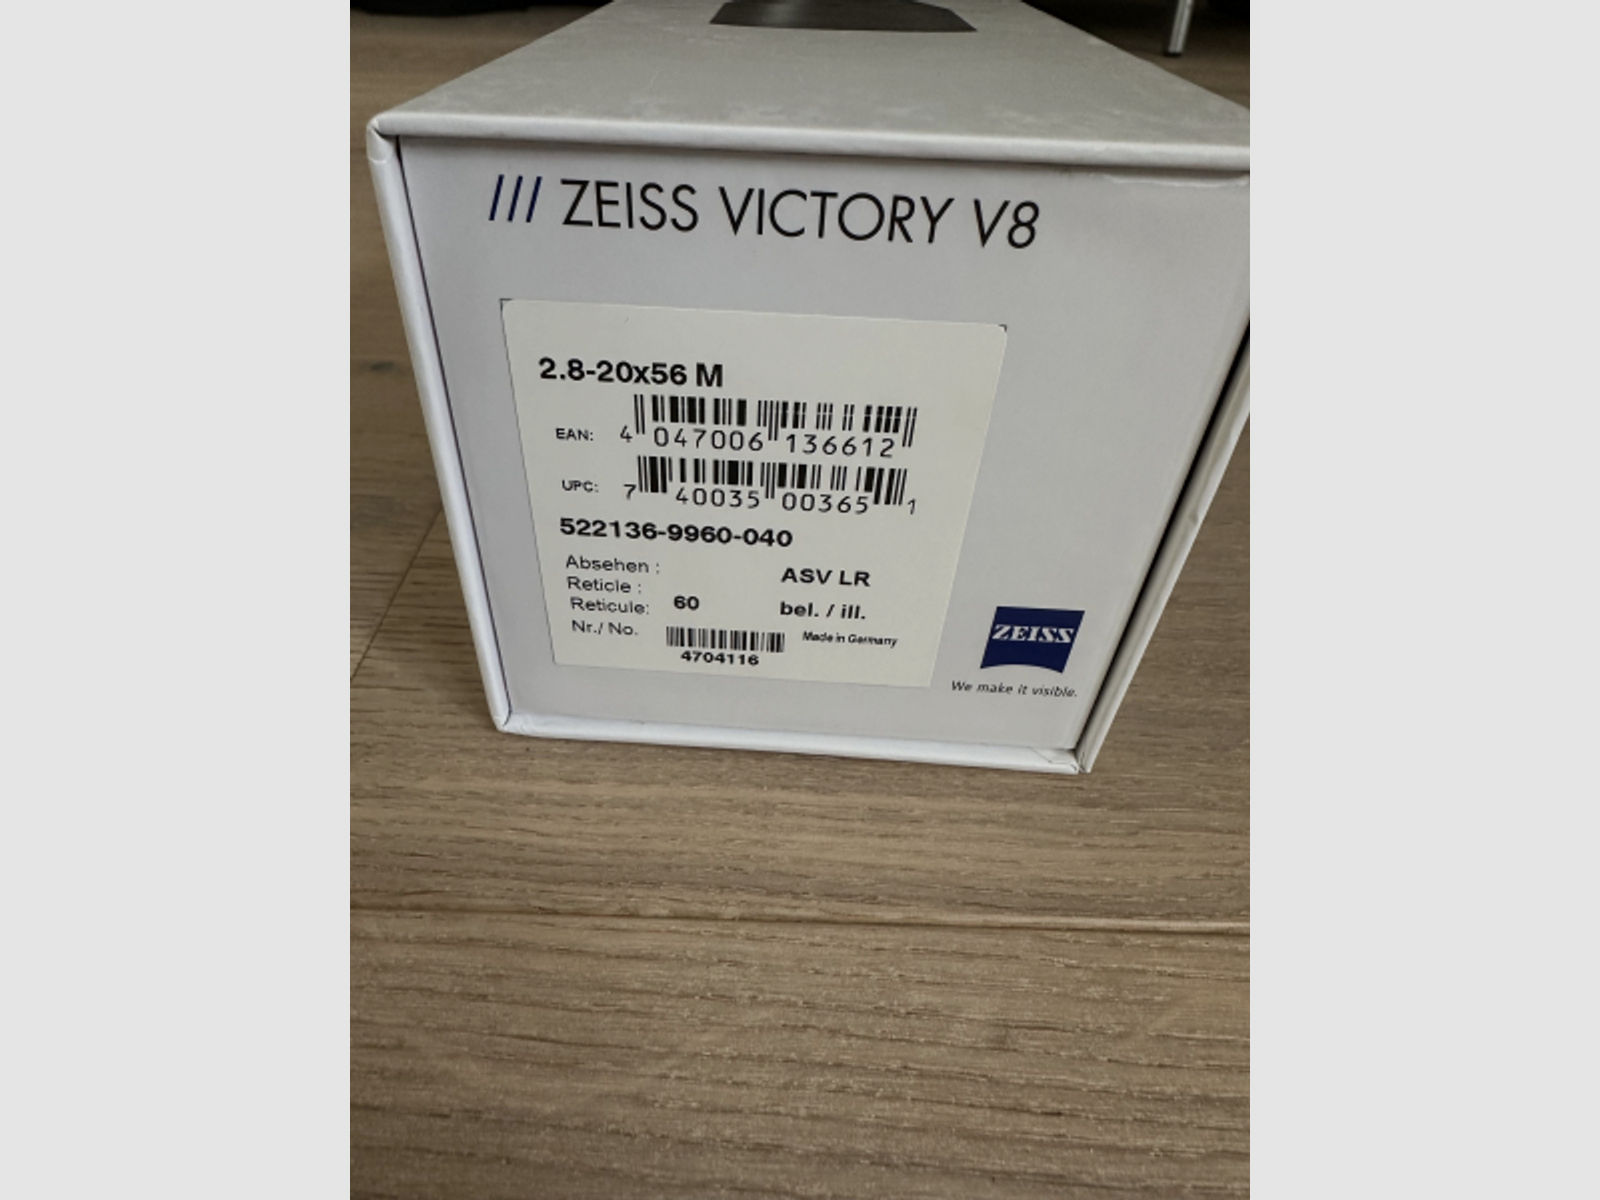 NEU - ZEISS V8 2.8-20x56 M mit Leuchtabsehen 60 und ASV LR